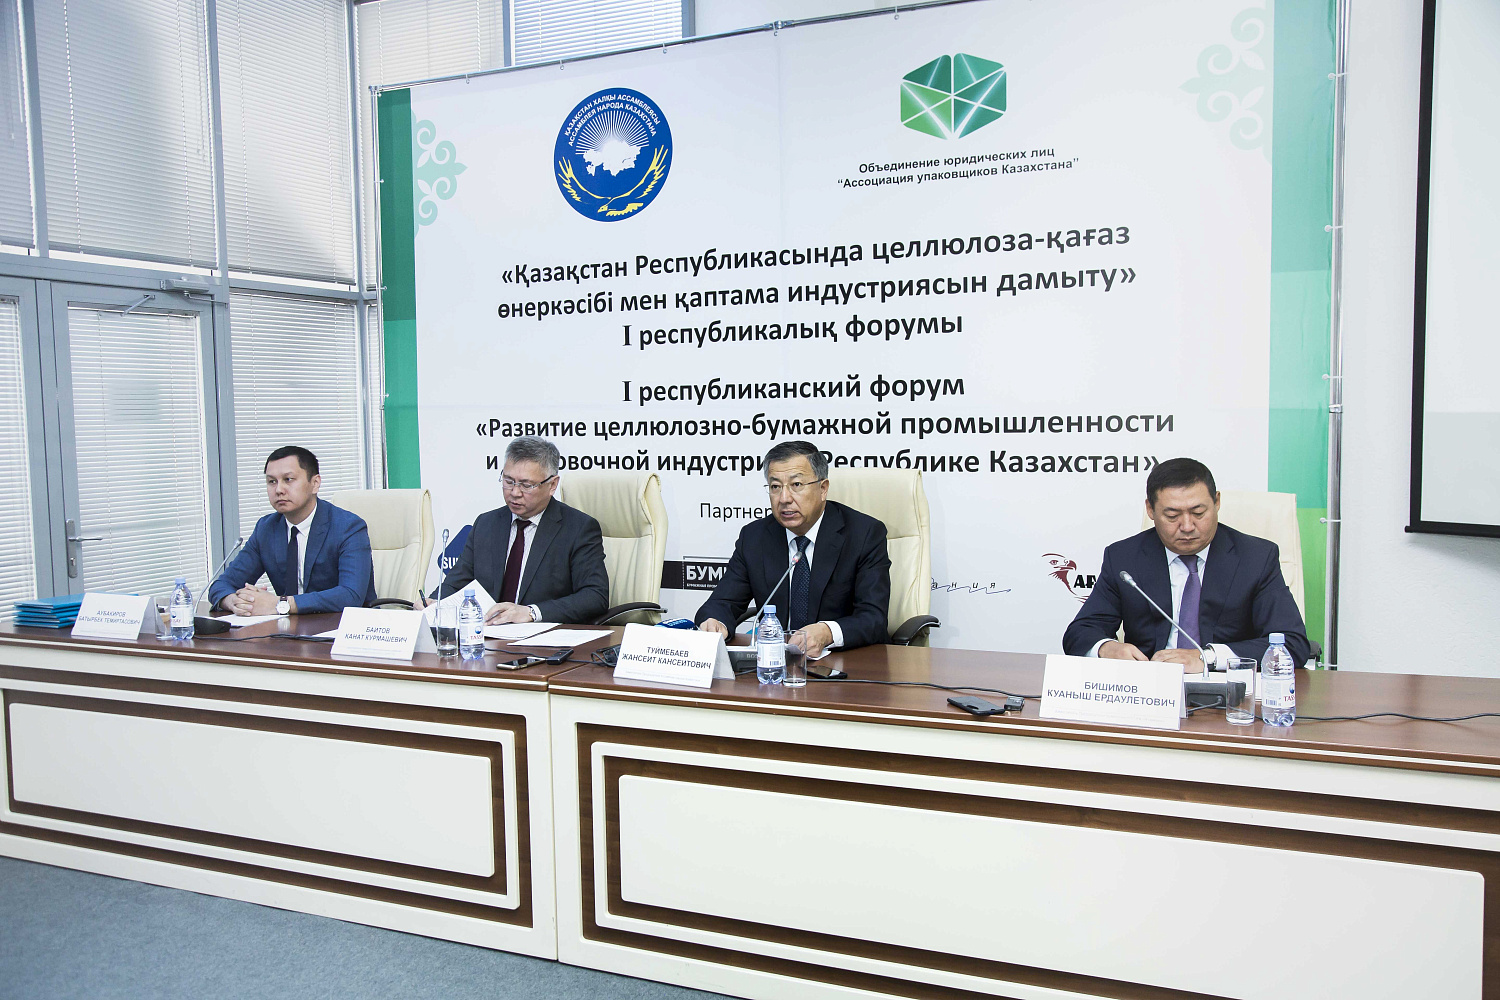 О роли фонда «САМРУК-ҚАЗЫНА» в развитии казахстанского производства бумаги и упаковок